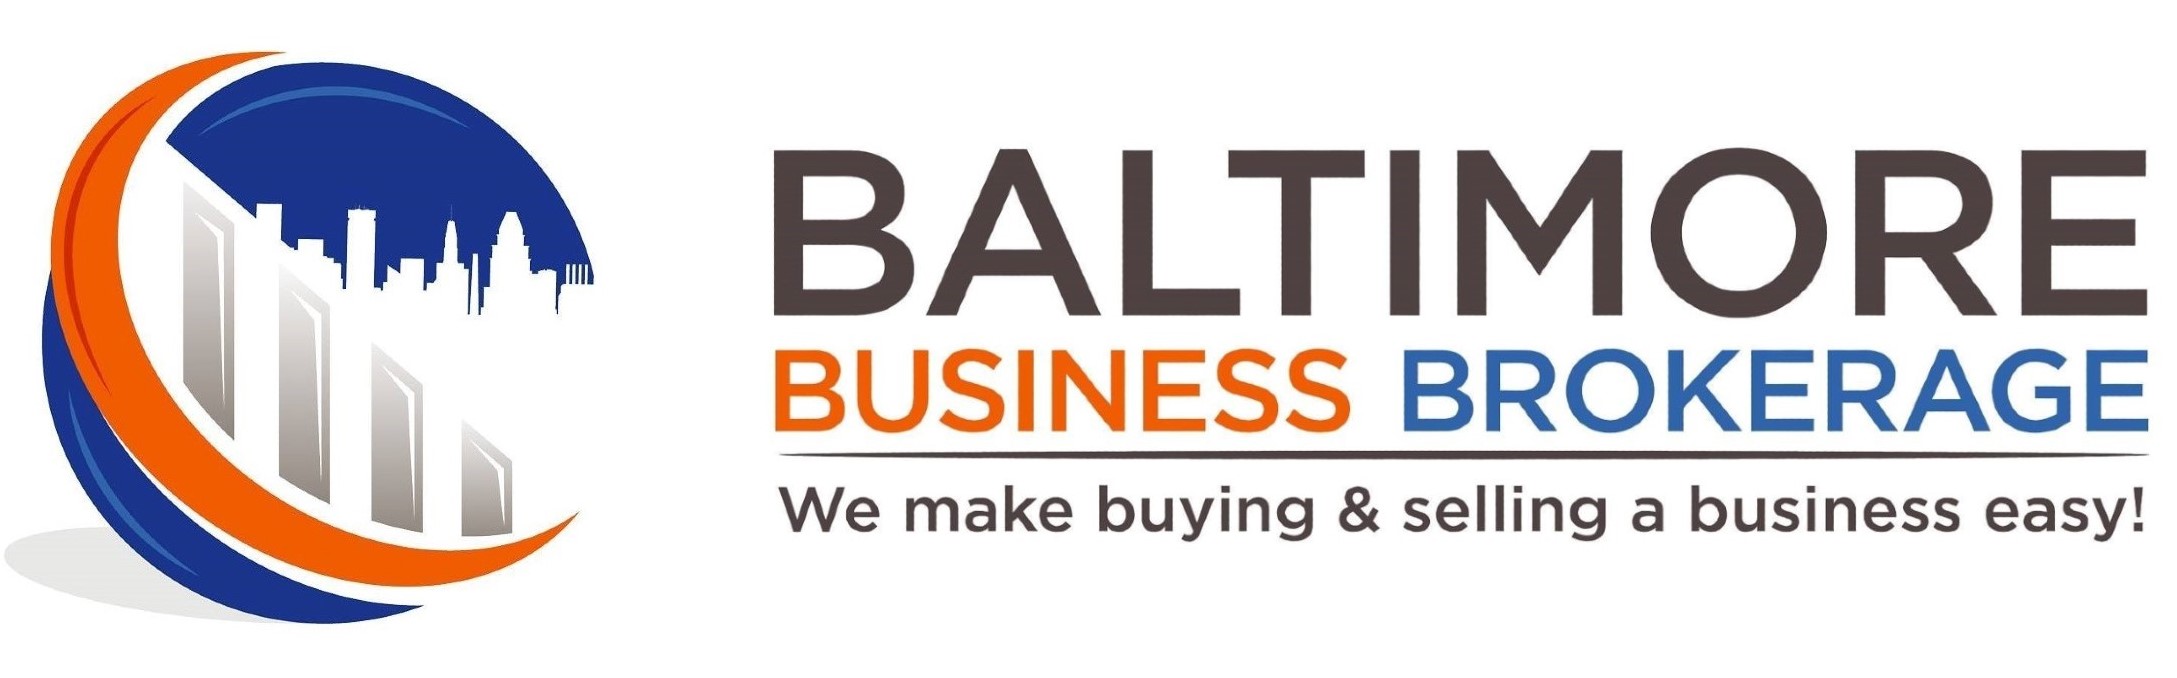 Baltimore Business Brokerage